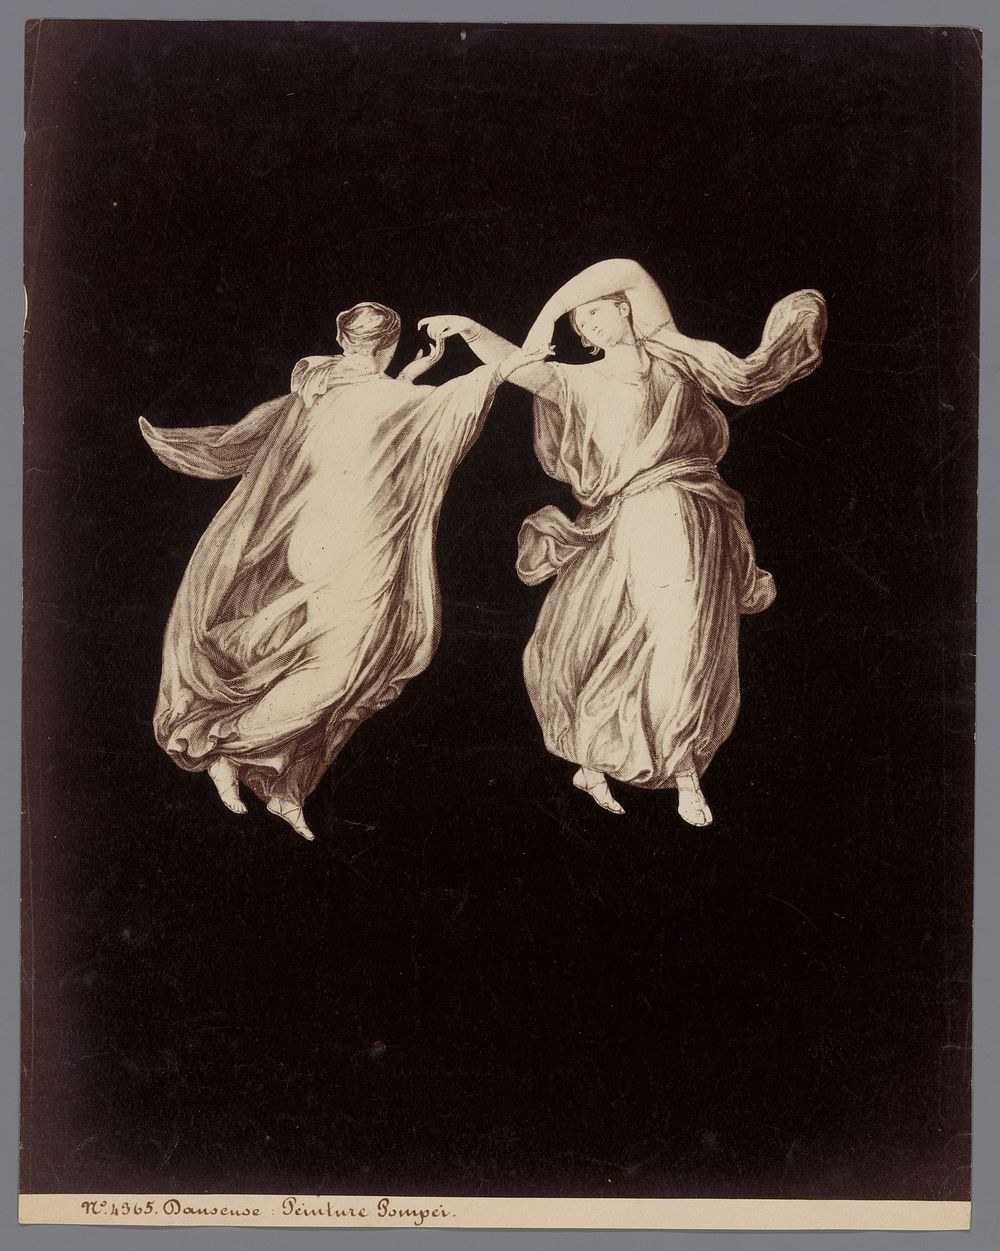 Fotoreproductie van een gravure naar een fresco van twee danseressen in Pompeï (c. 1870 - c. 1890) by anonymous, anonymous…